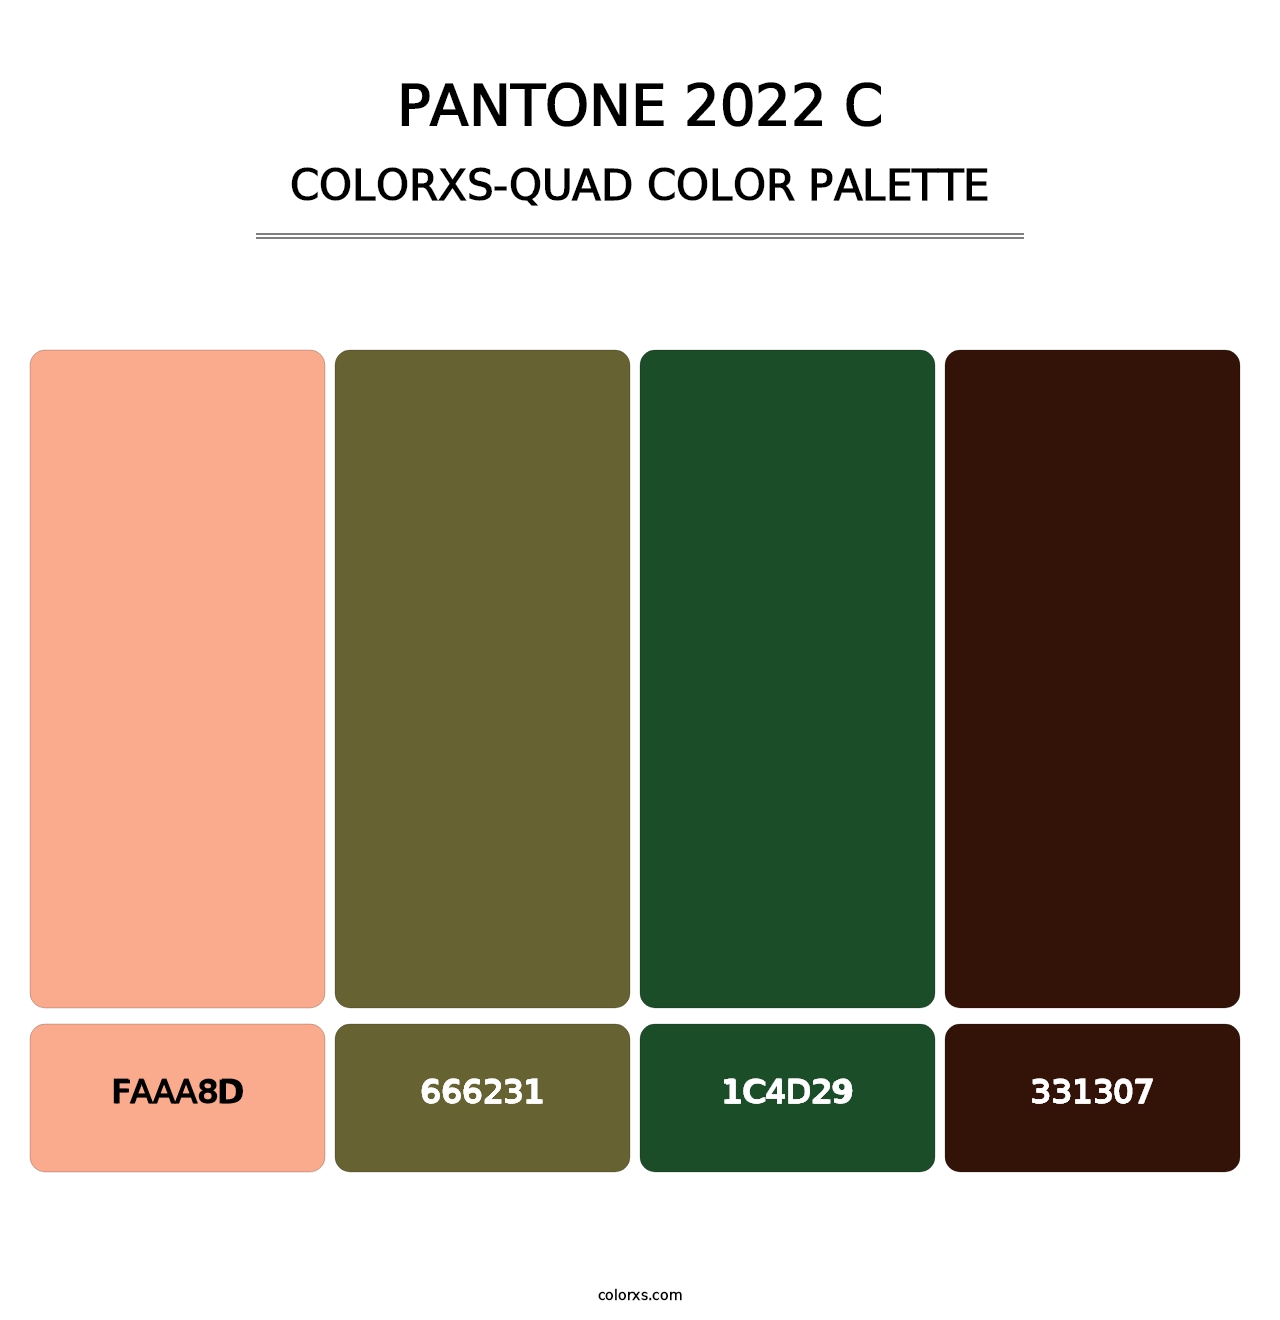 PANTONE 2022 C - Colorxs Quad Palette